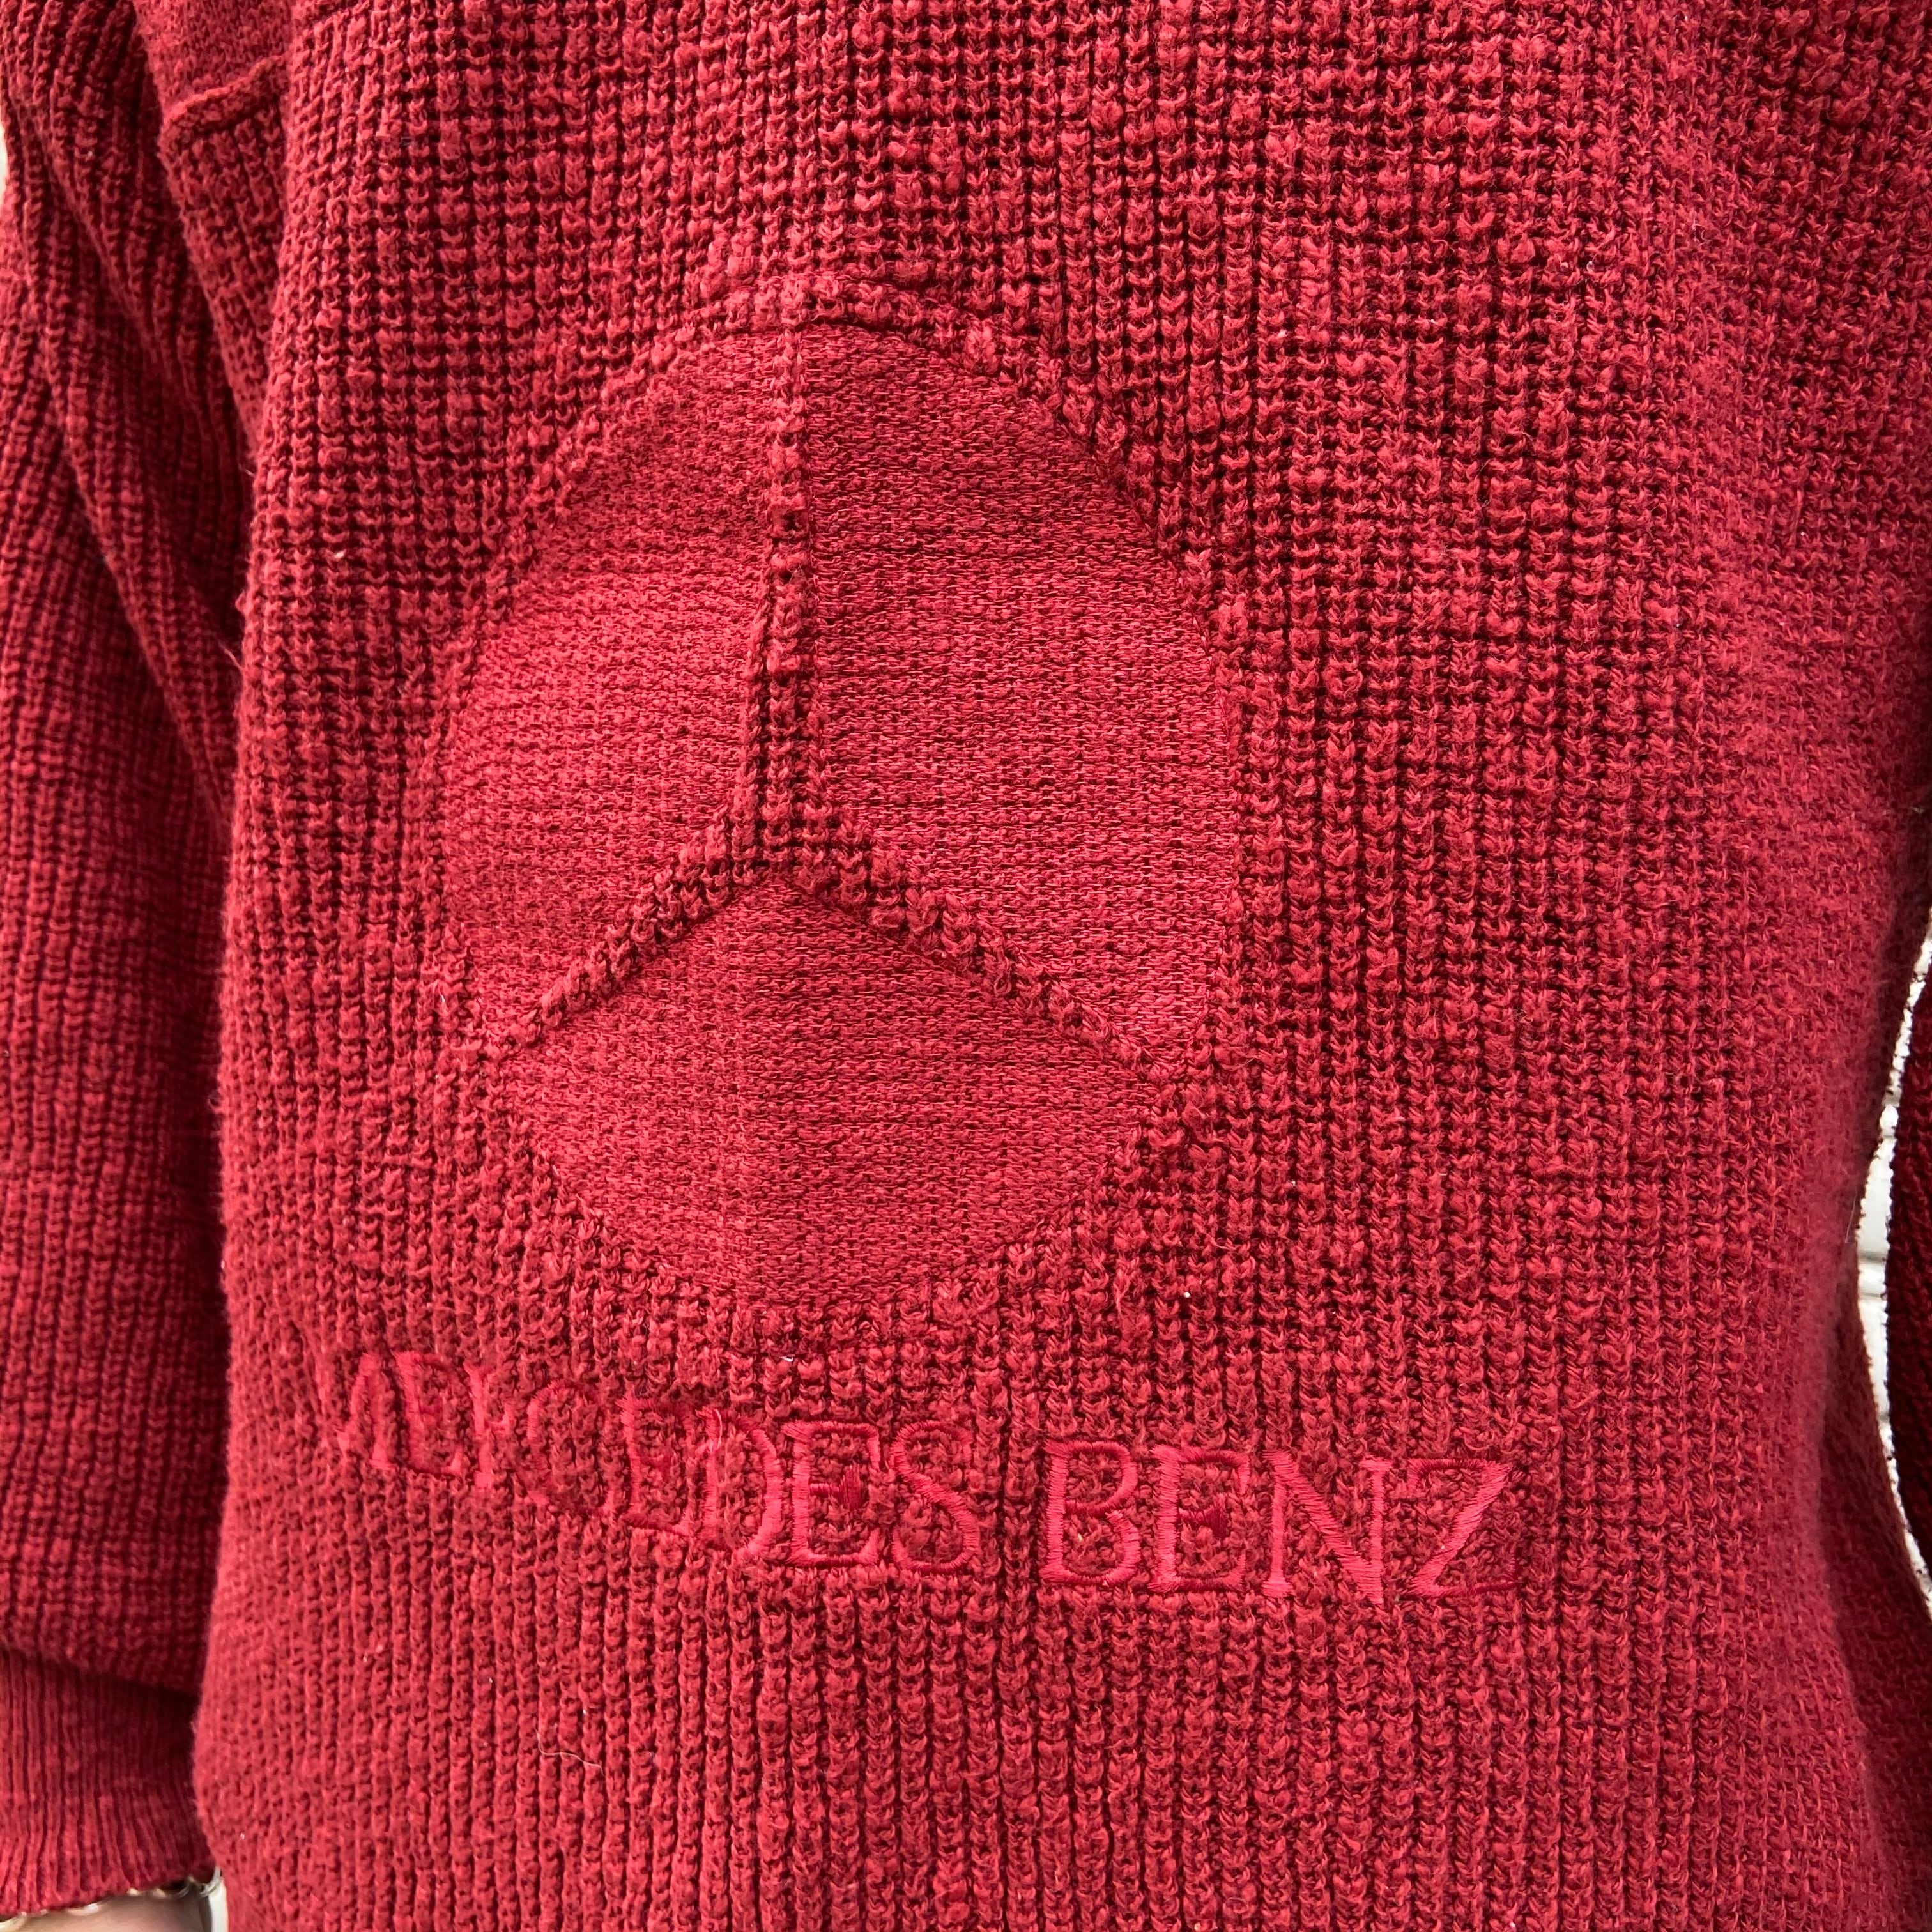 送料無料レア メルセデスベンツ ロゴ刺繍セーター 製 コットン